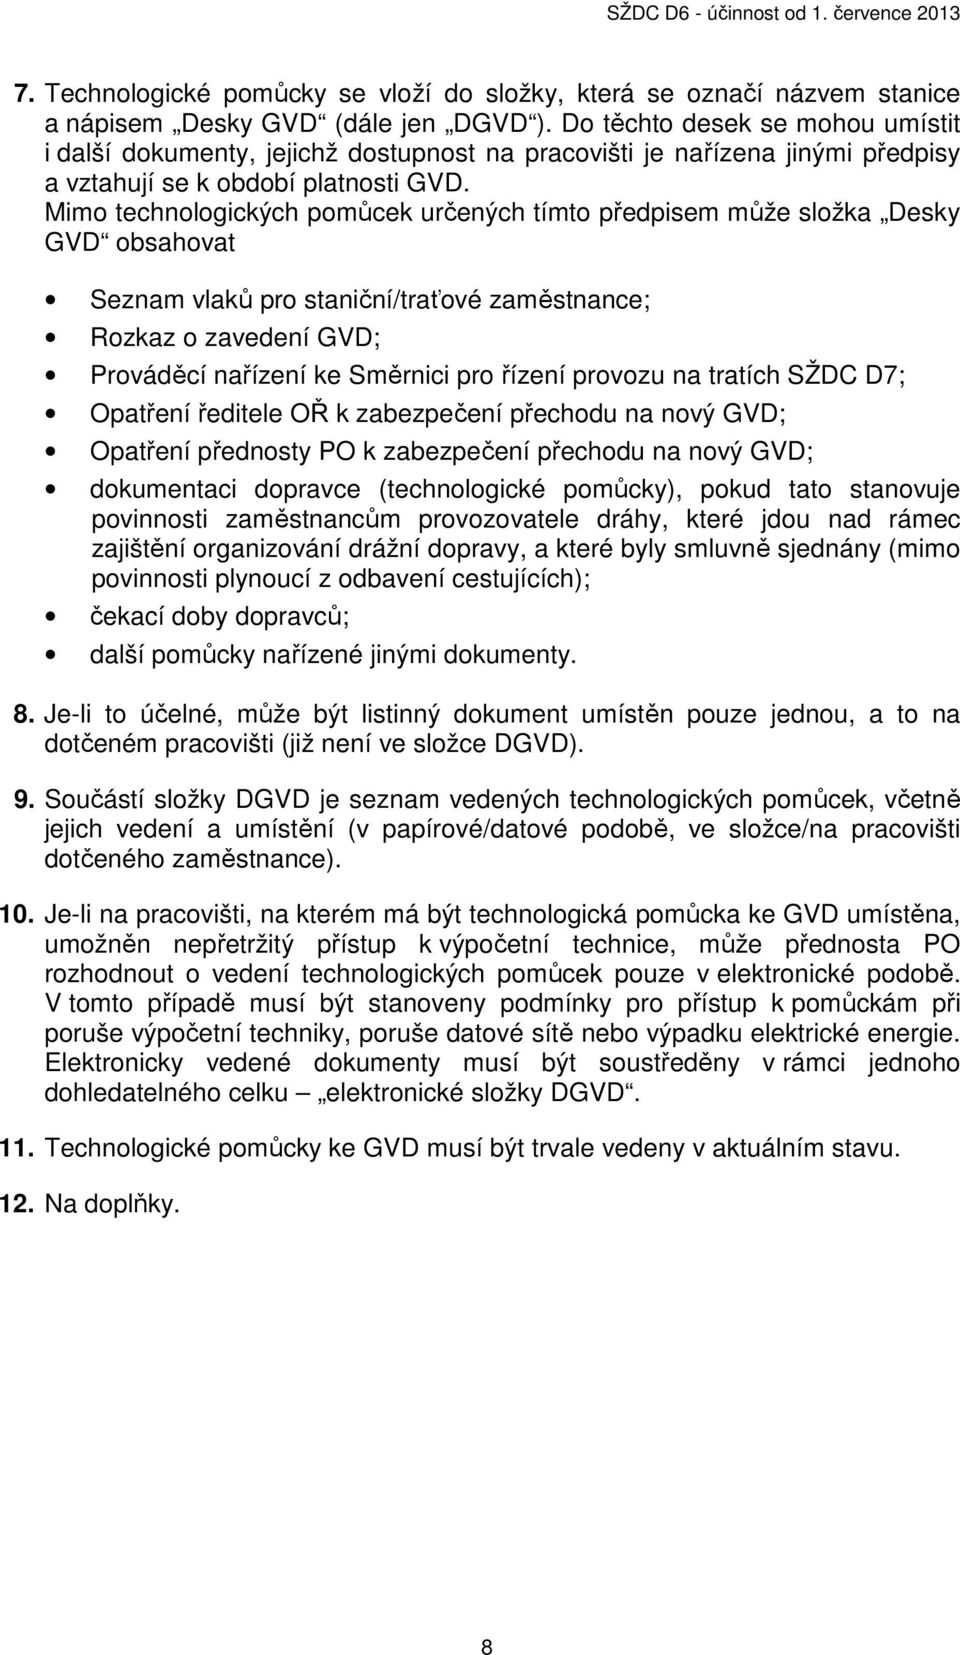 Mimo technologických pomůcek určených tímto předpisem může složka Desky GVD obsahovat Seznam vlaků pro staniční/traťové zaměstnance; Rozkaz o zavedení GVD; Prováděcí nařízení ke Směrnici pro řízení